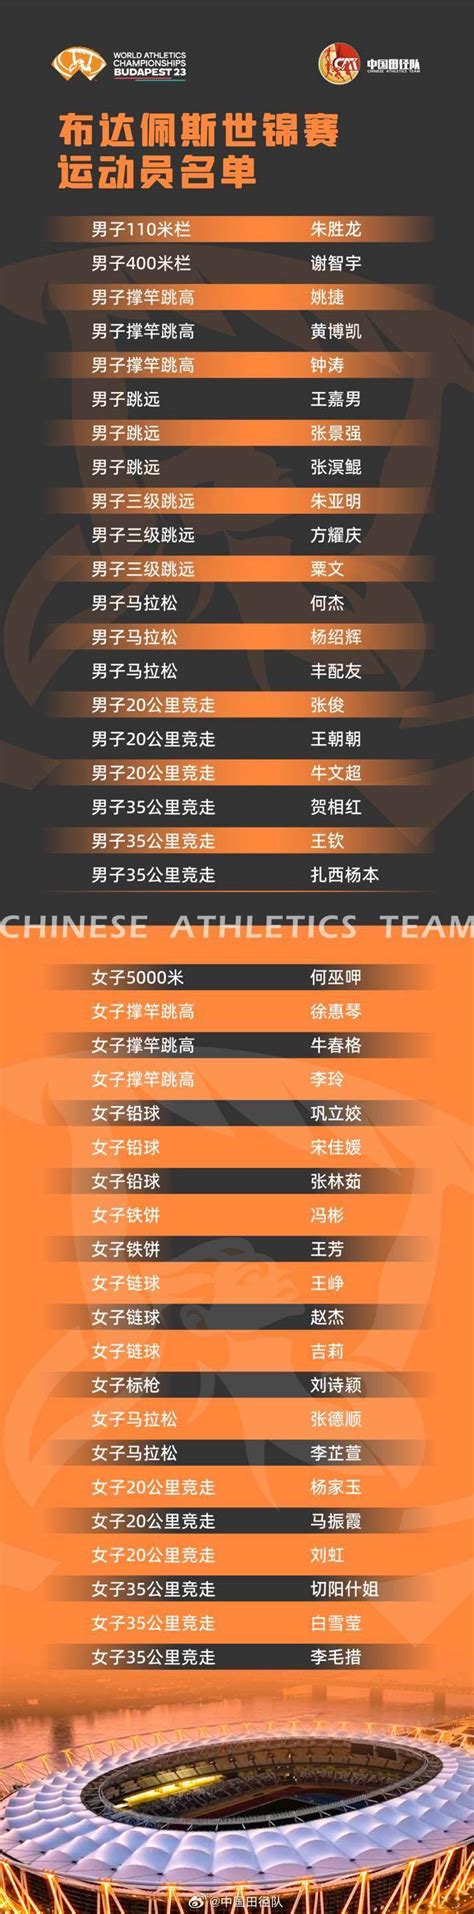 中国田径队世锦赛大名单出炉